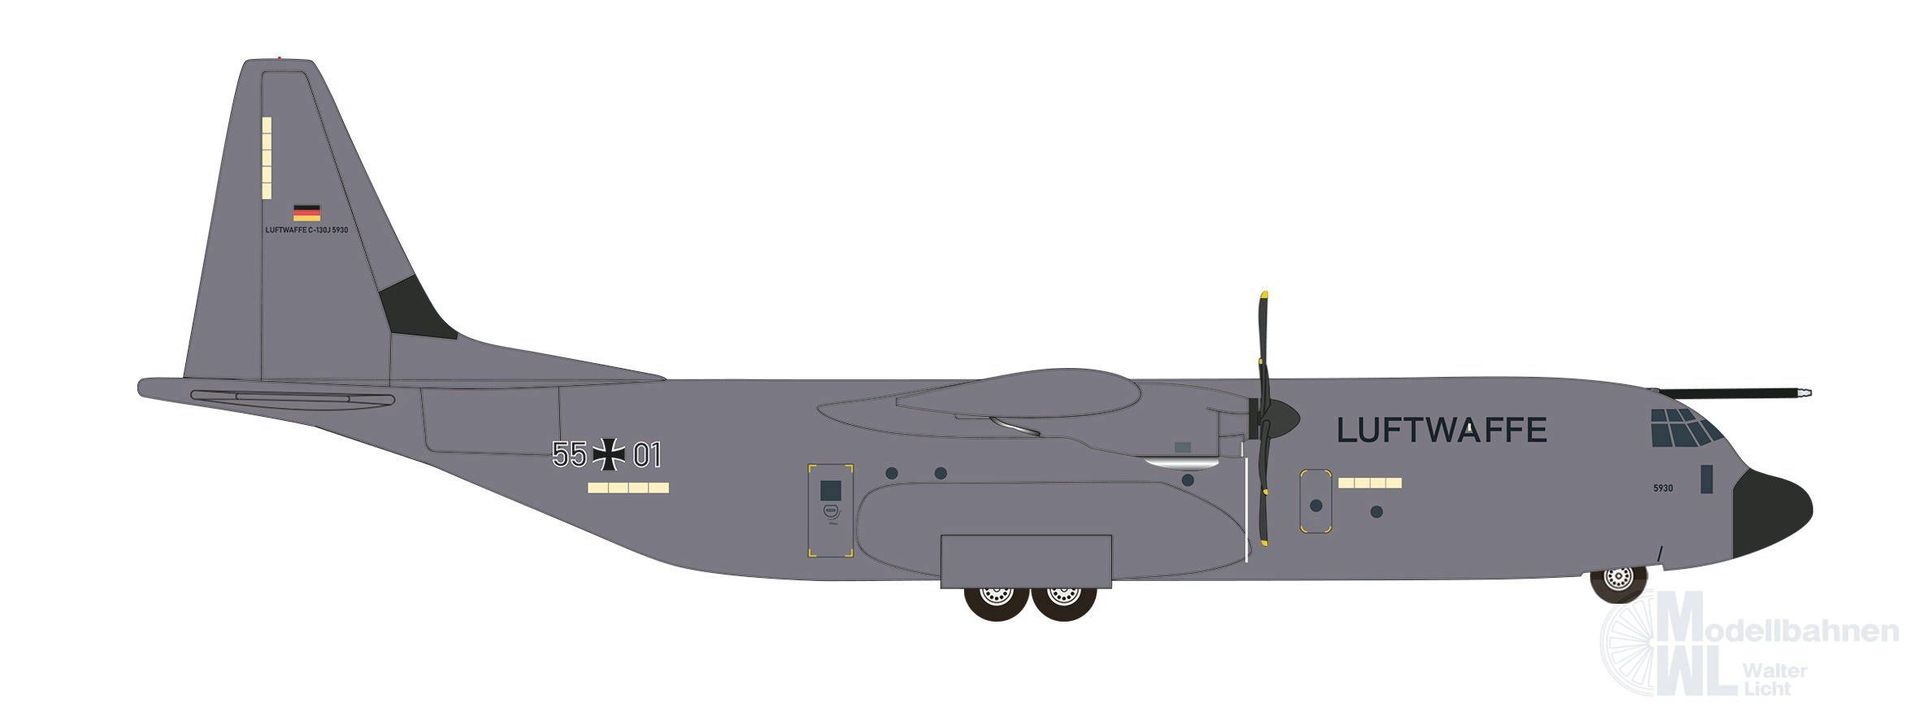 Herpa 537438 - C-130J-30 Luftwaffe 55+01 1:500